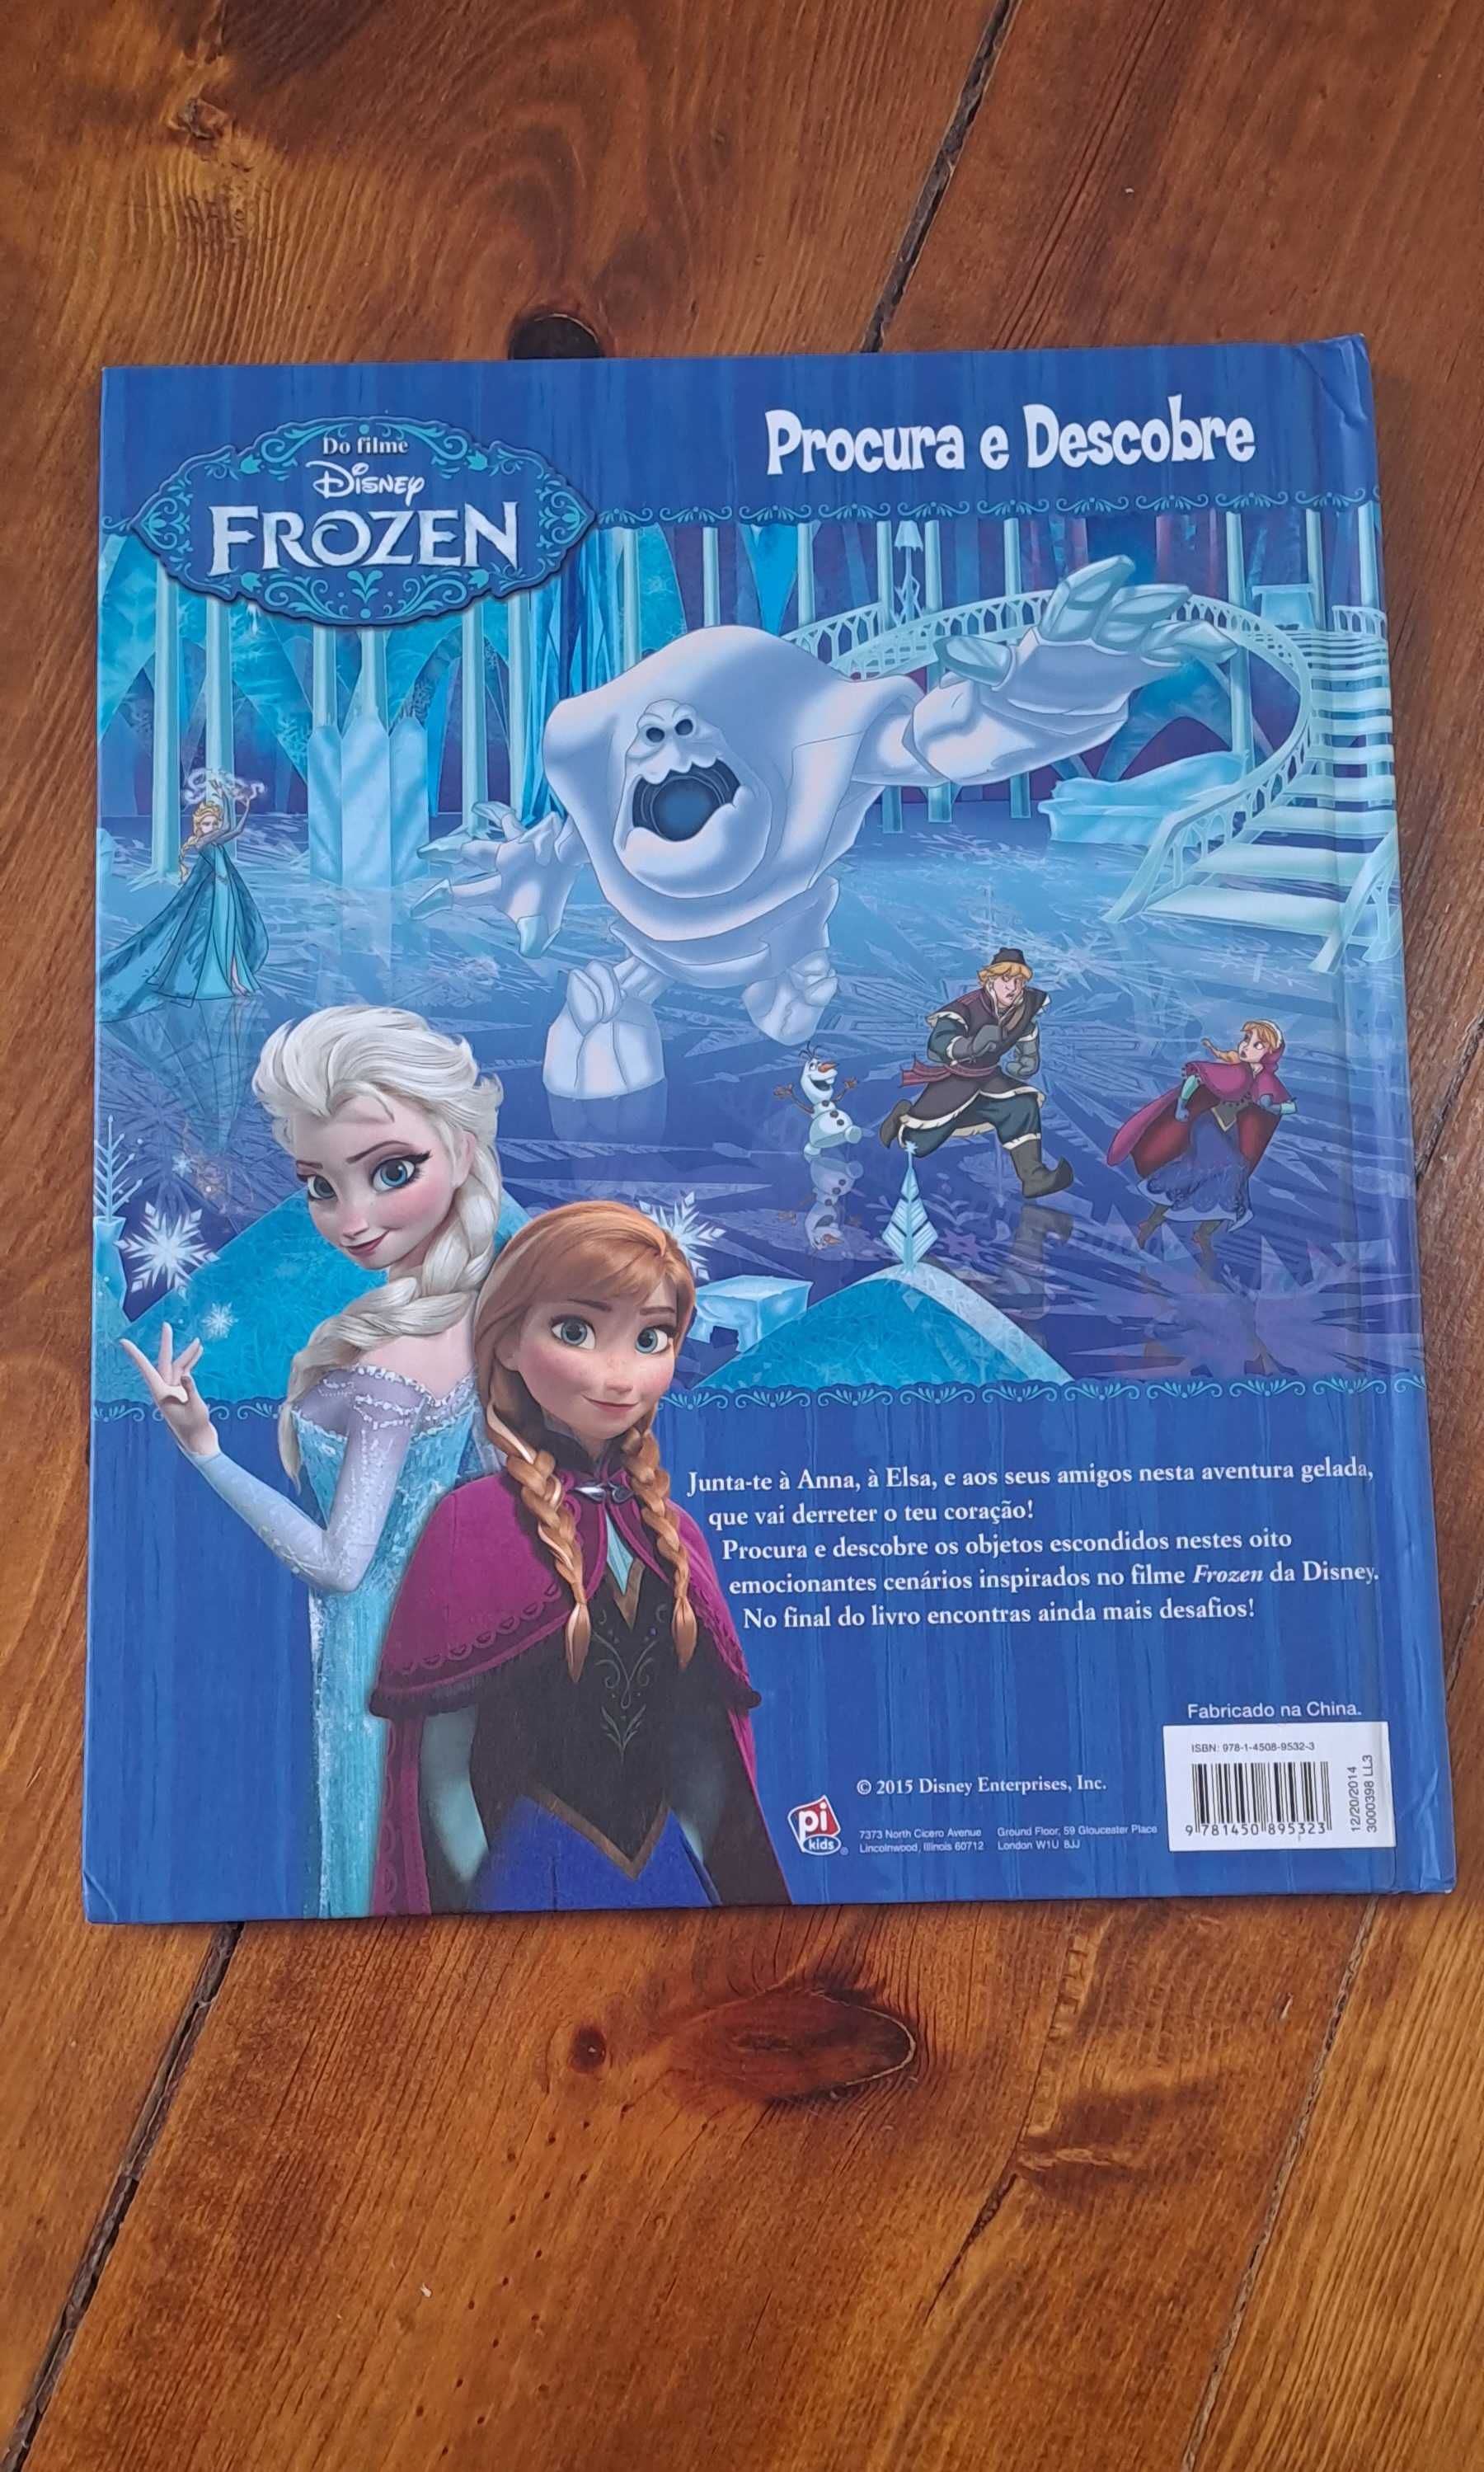 Livro procura e descobre do filme Frozen